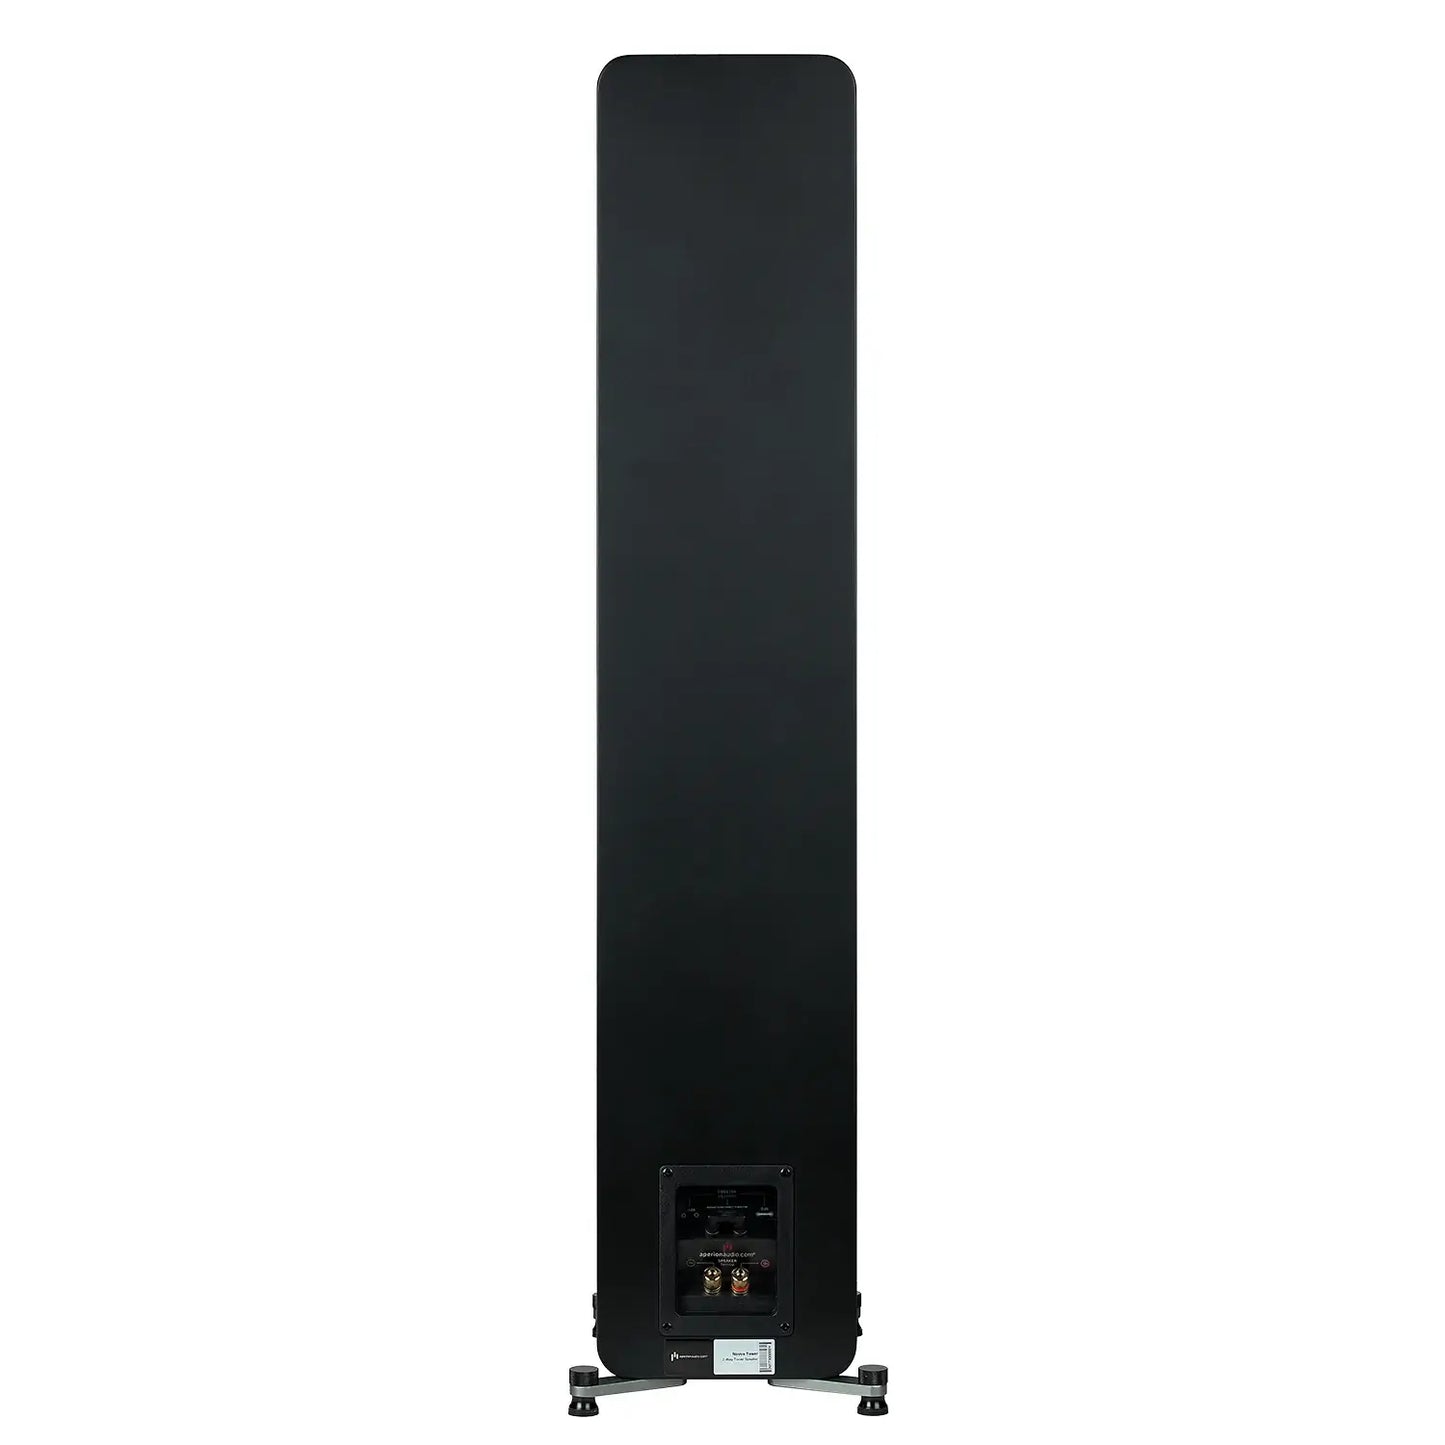 Aperion-Novus-N5T-2Way-Dual-5.25"-Floorstanding-Tower-Speaker-StealthBlack-Back-aperionaudio